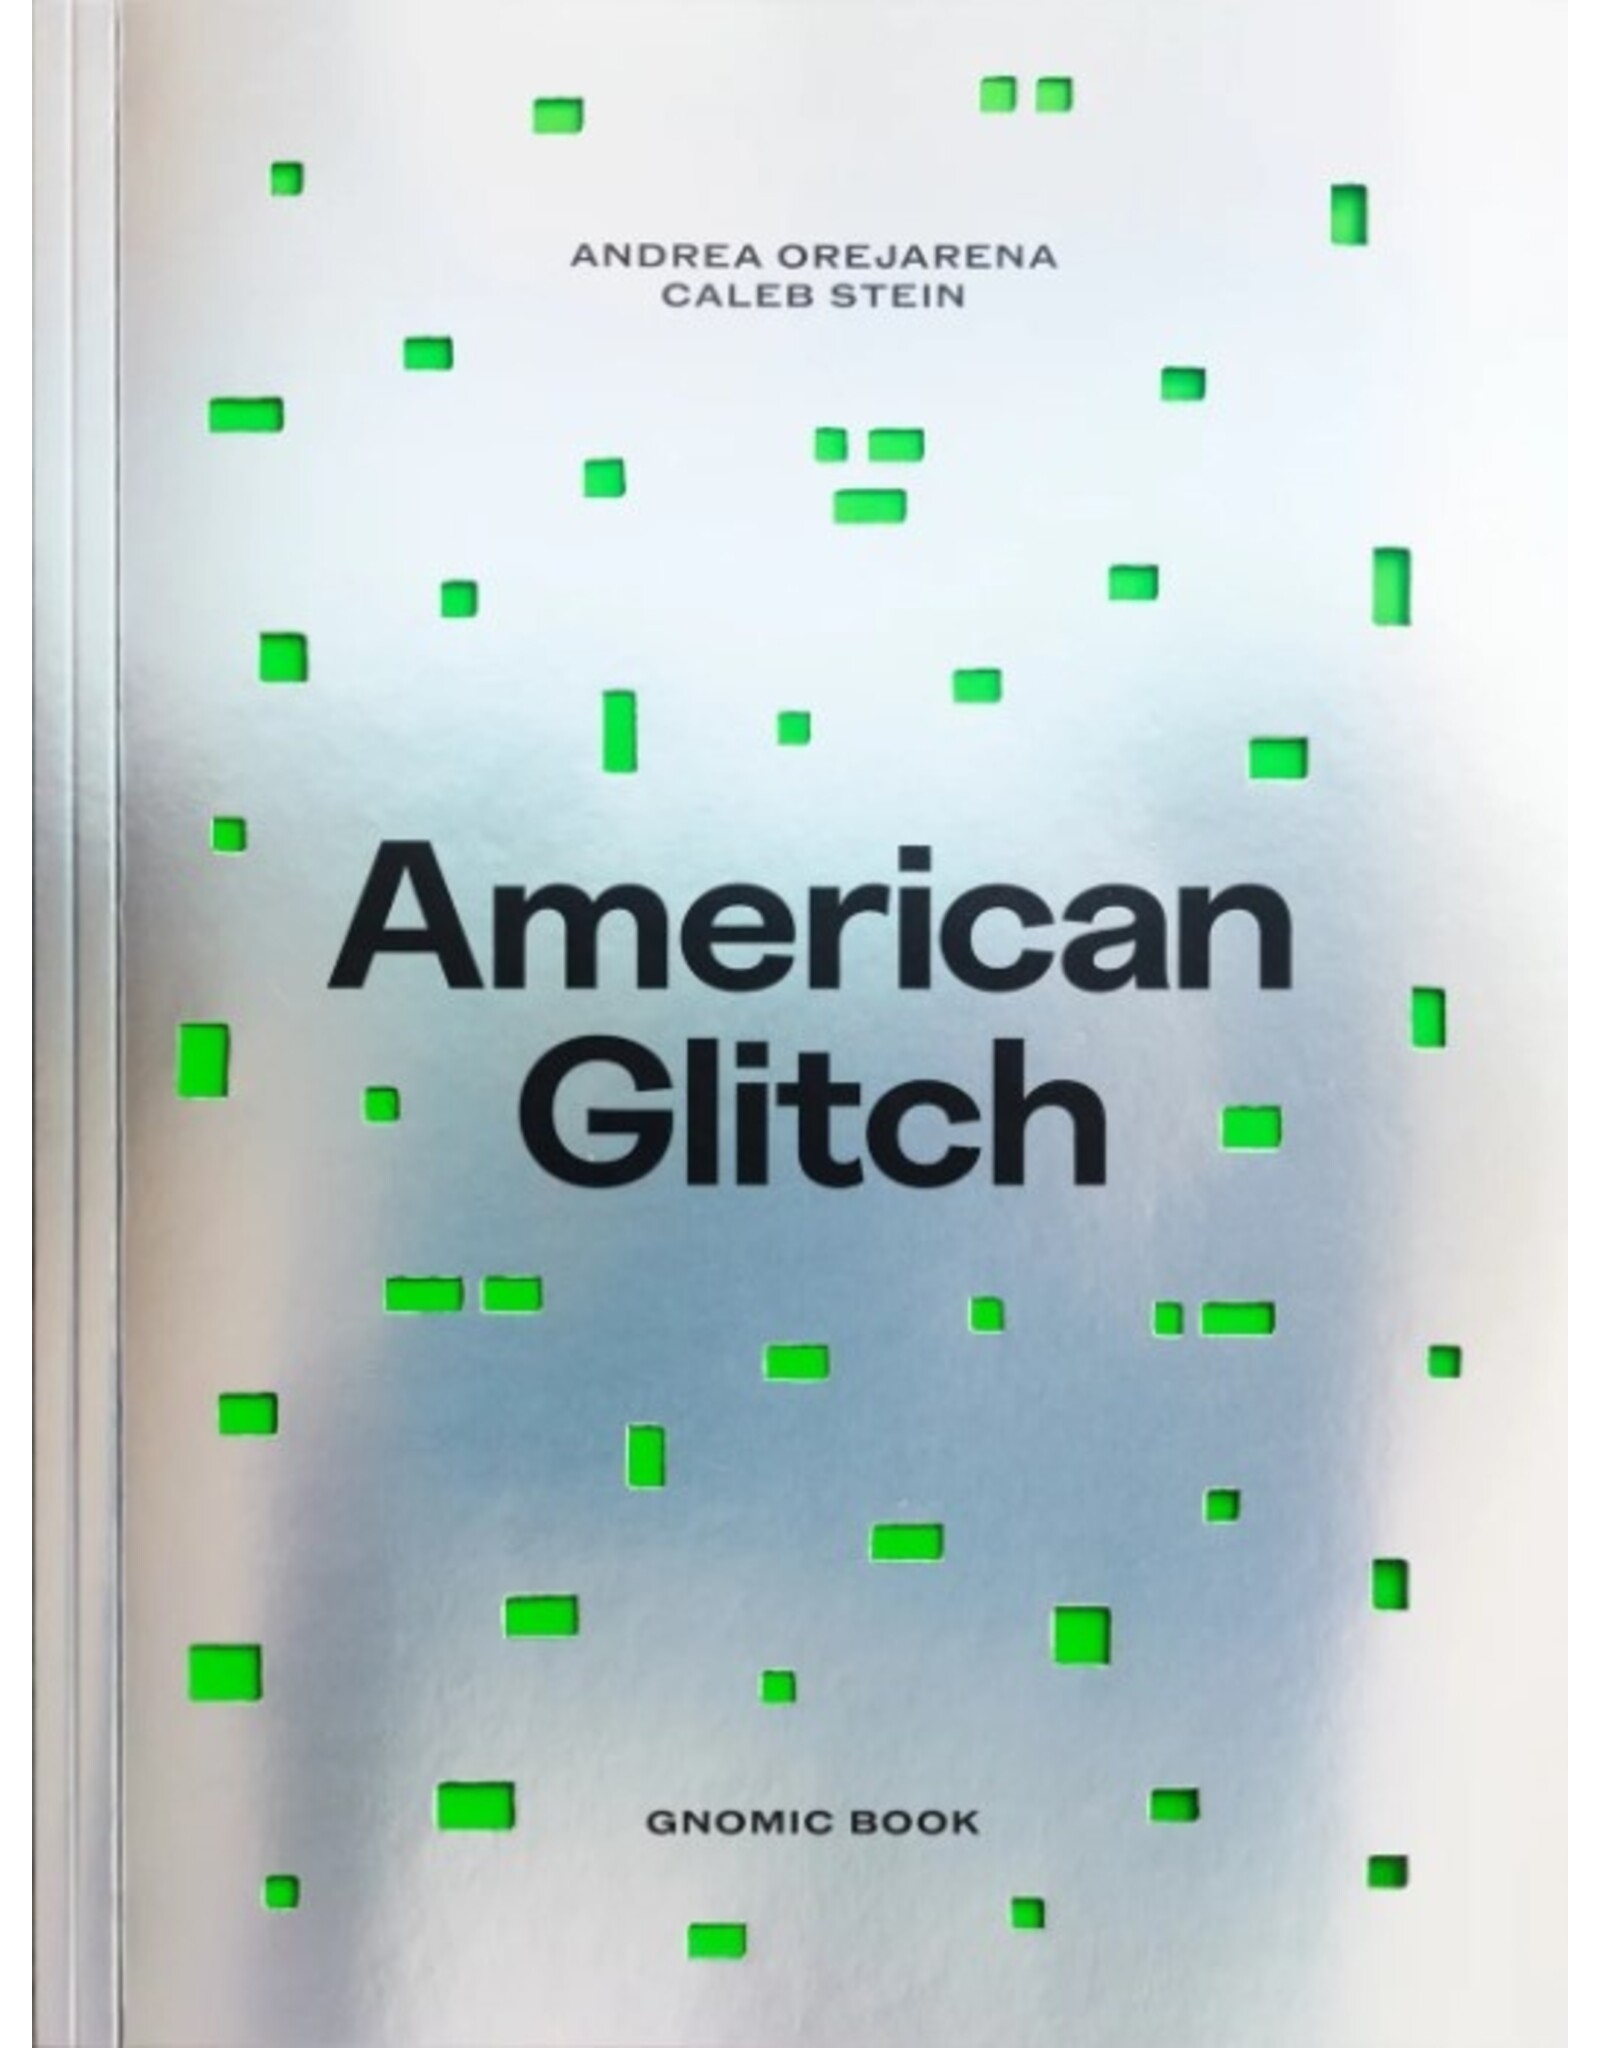 Andrea Orejarena & Caleb Stein: American Glitch